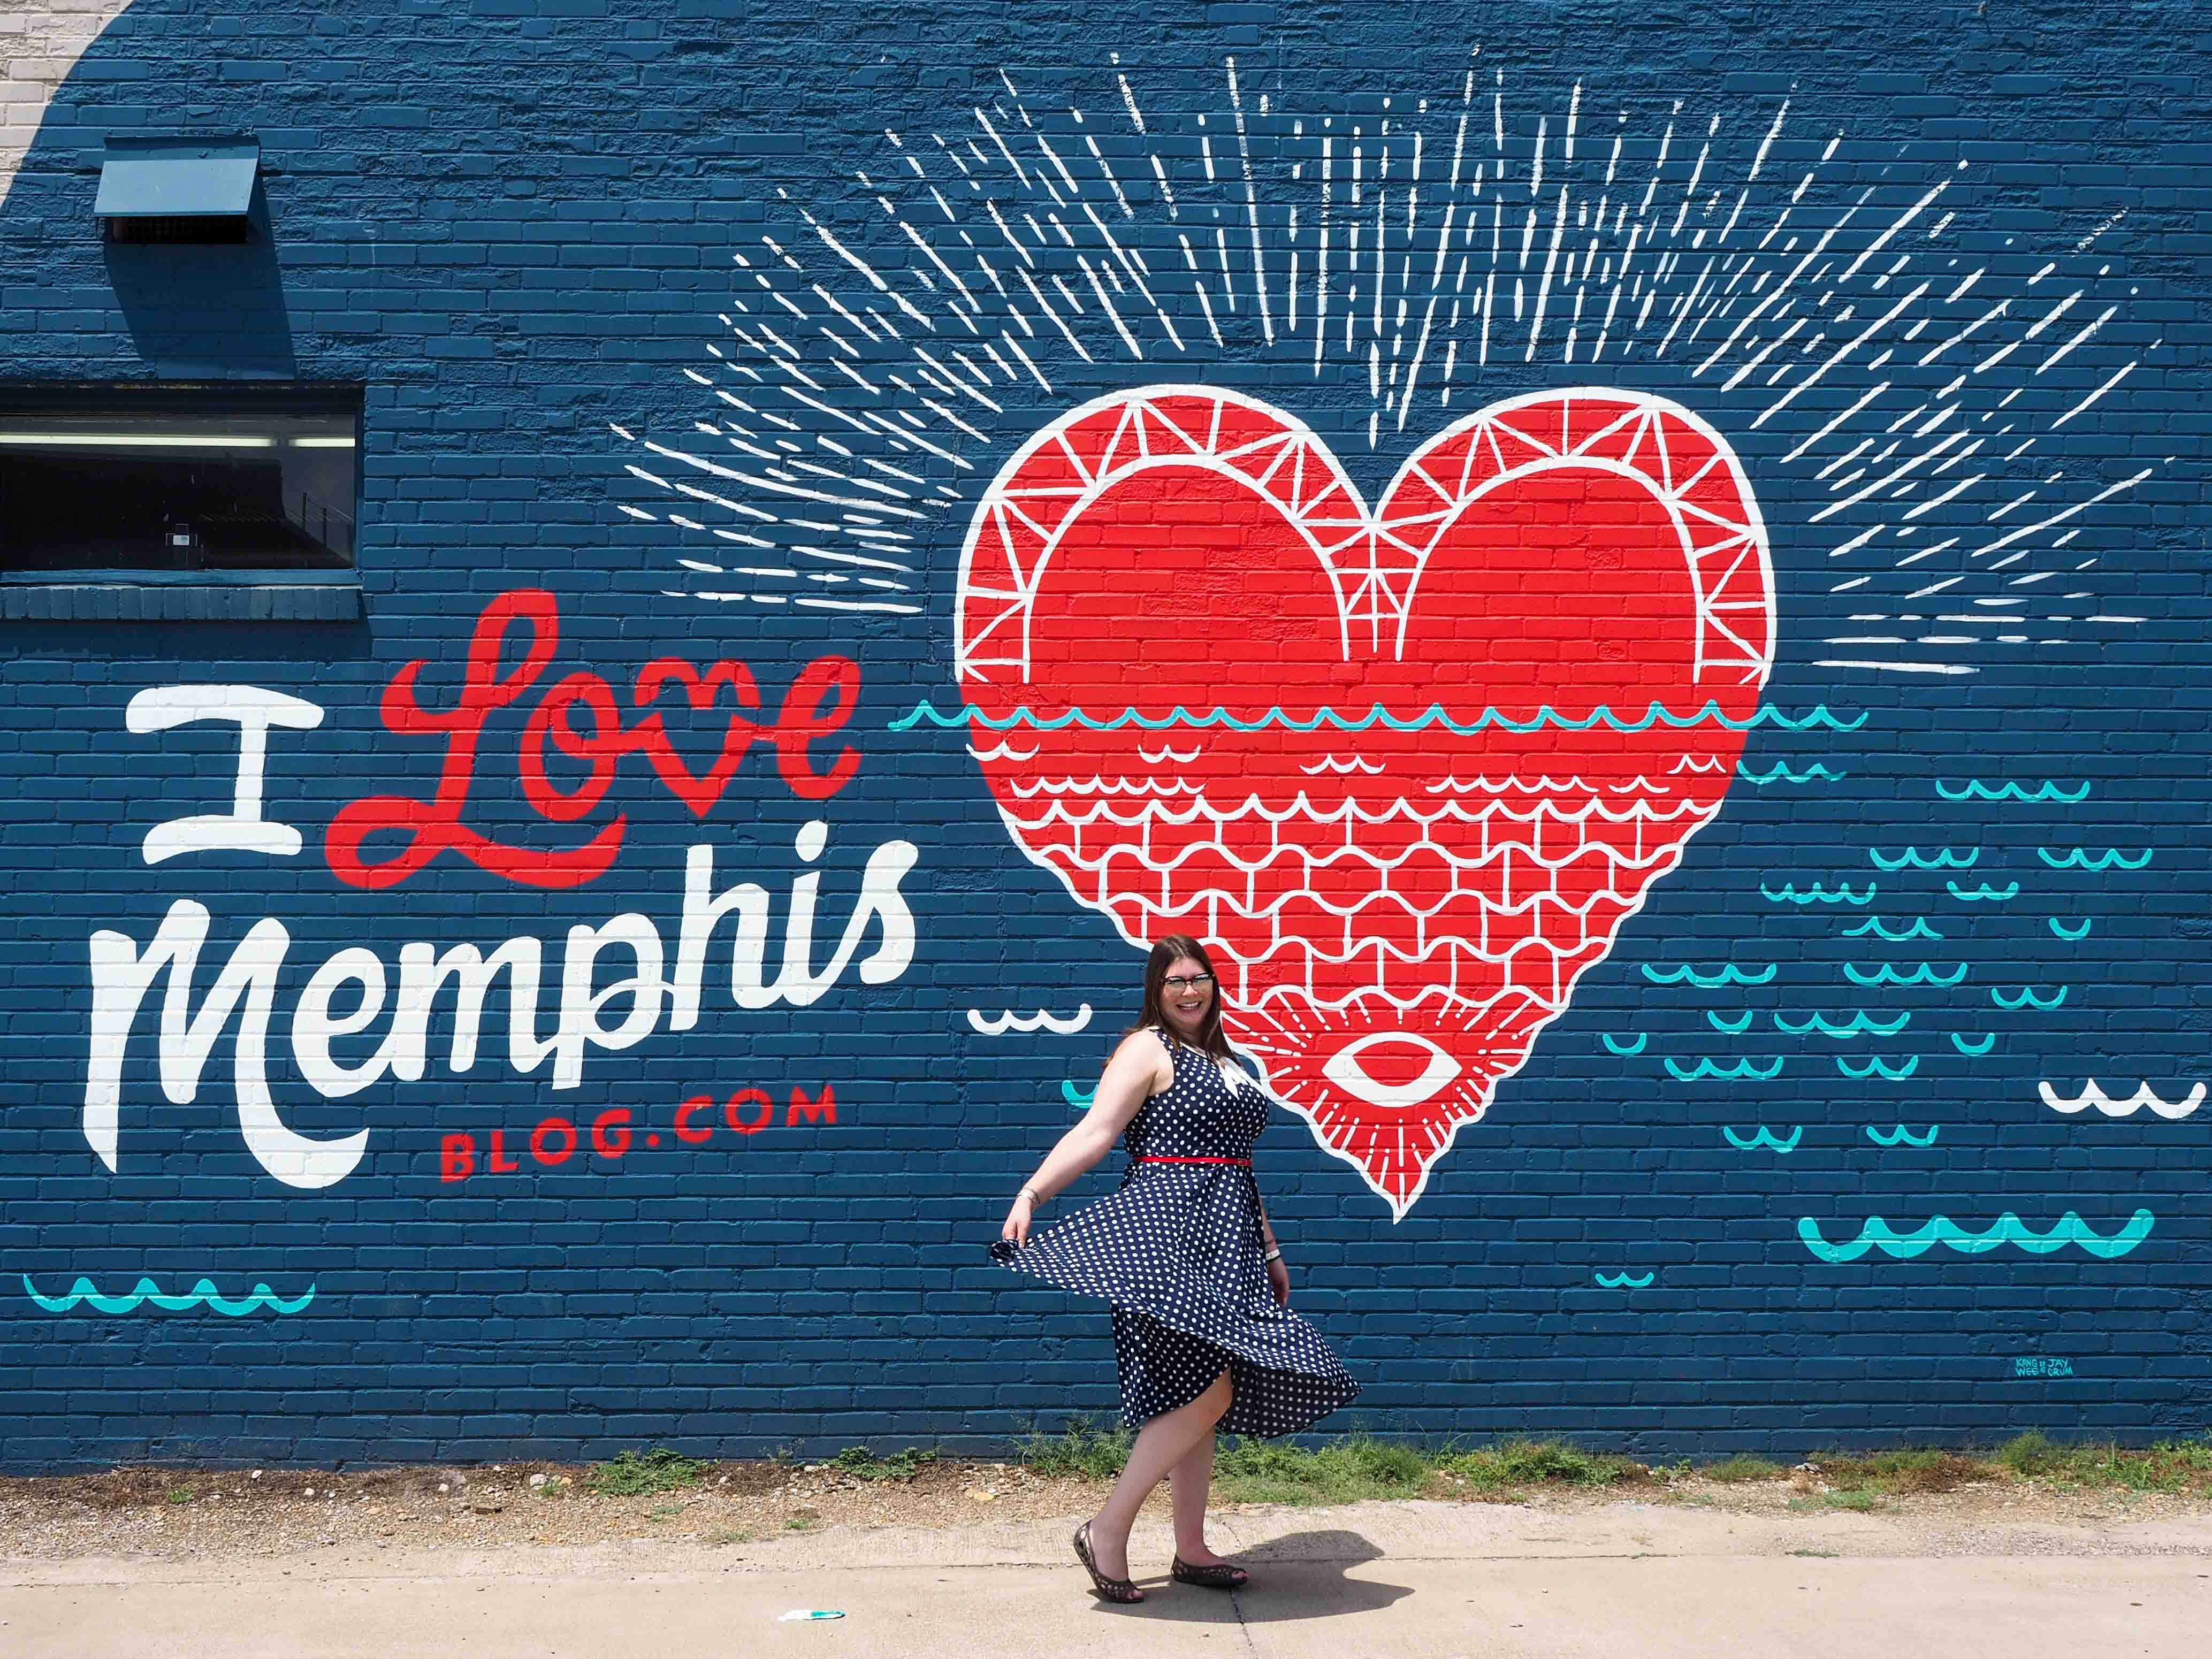 Memphis mural